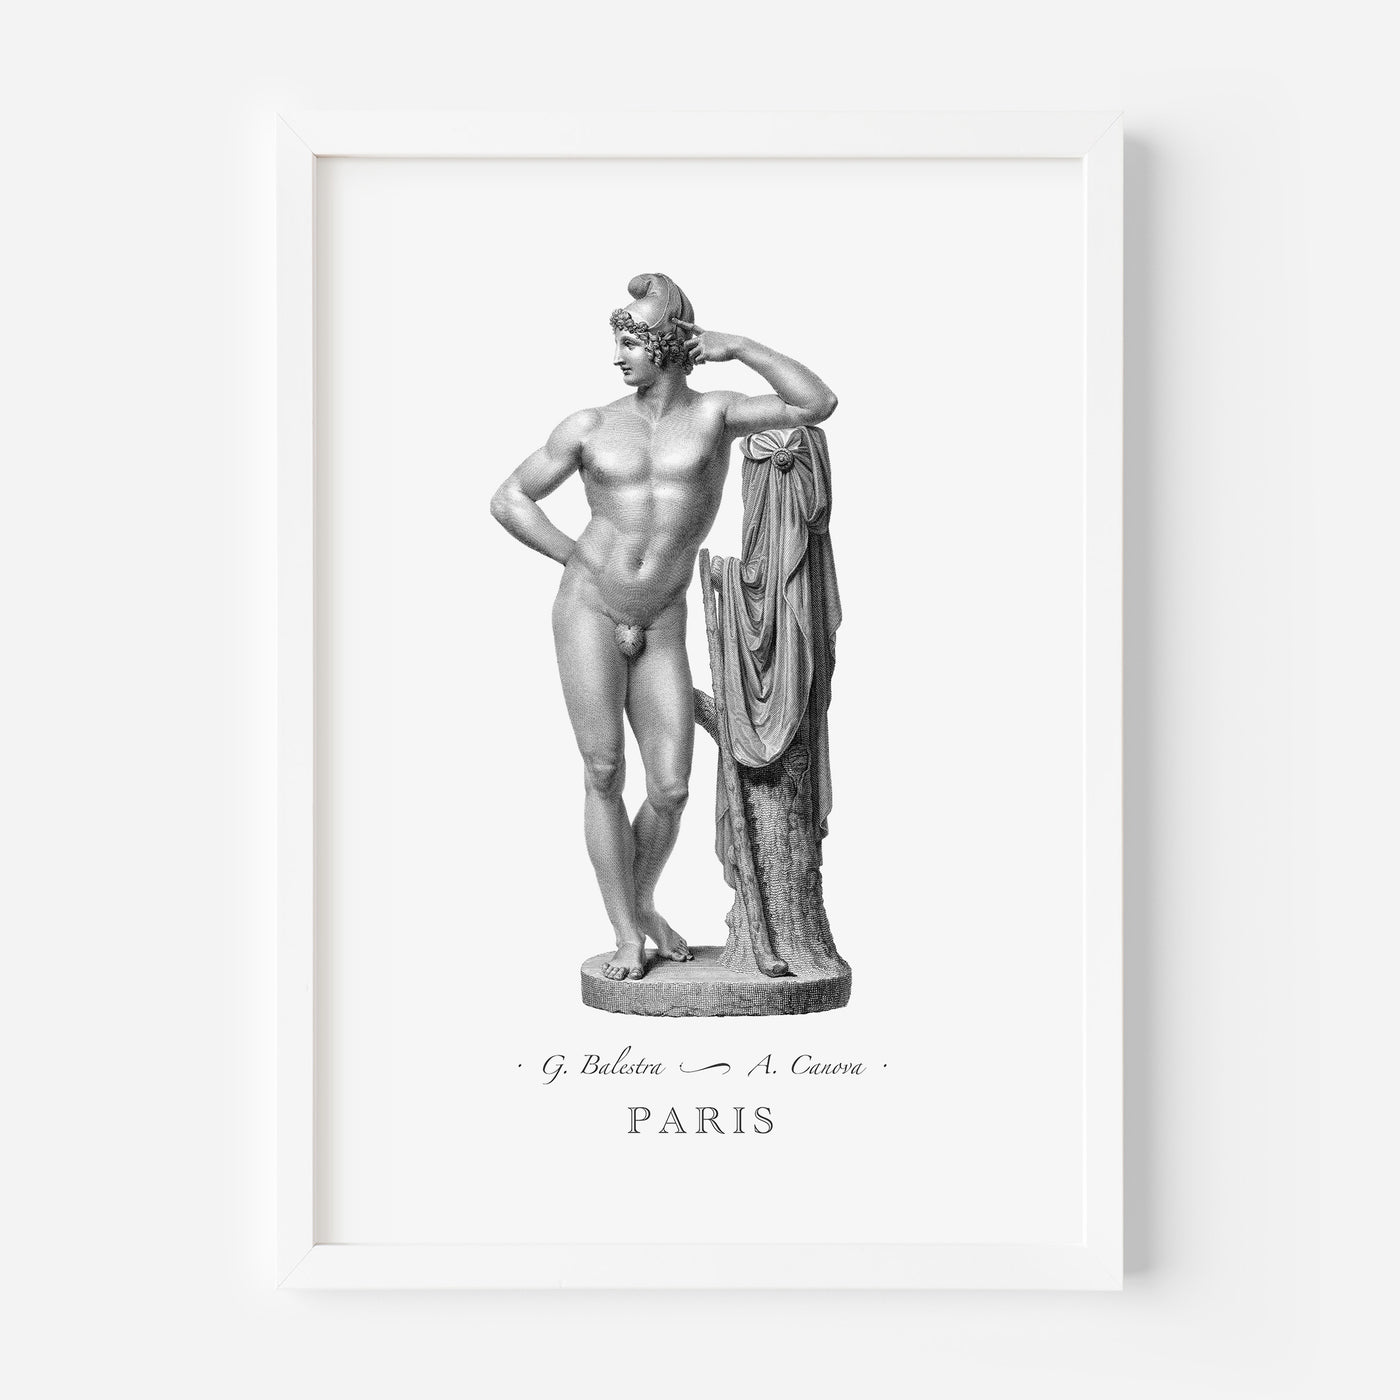 Paris engraving